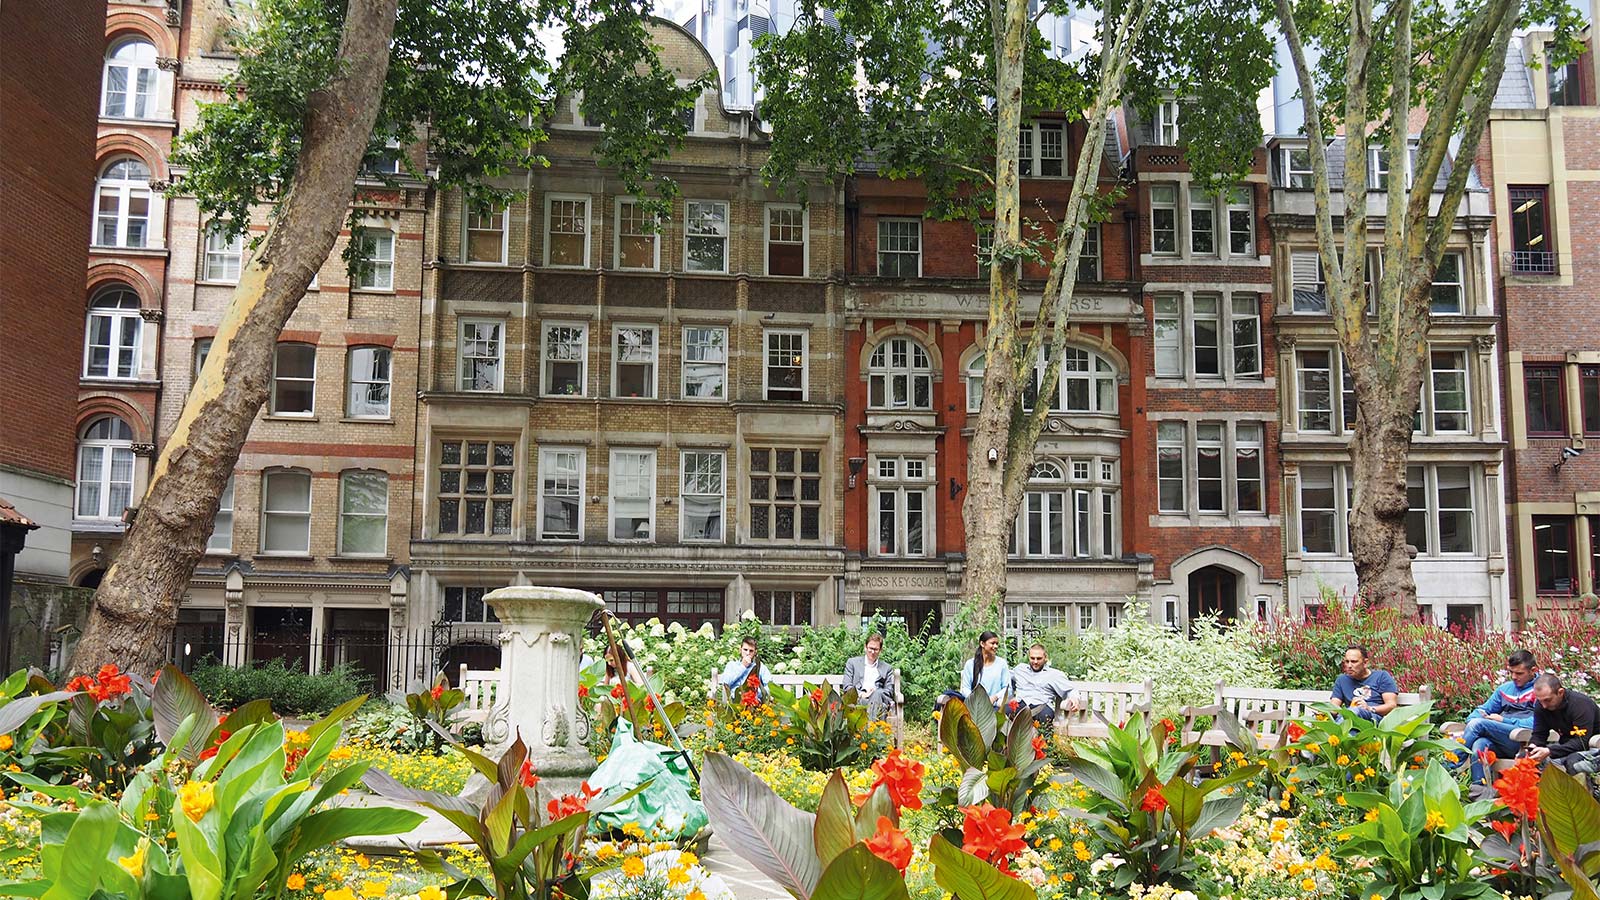 Mitten im hektischen Zentrum Londons, umgeben von Banken und Büros, liegt ein kleiner Park, fast nur ein Garten.